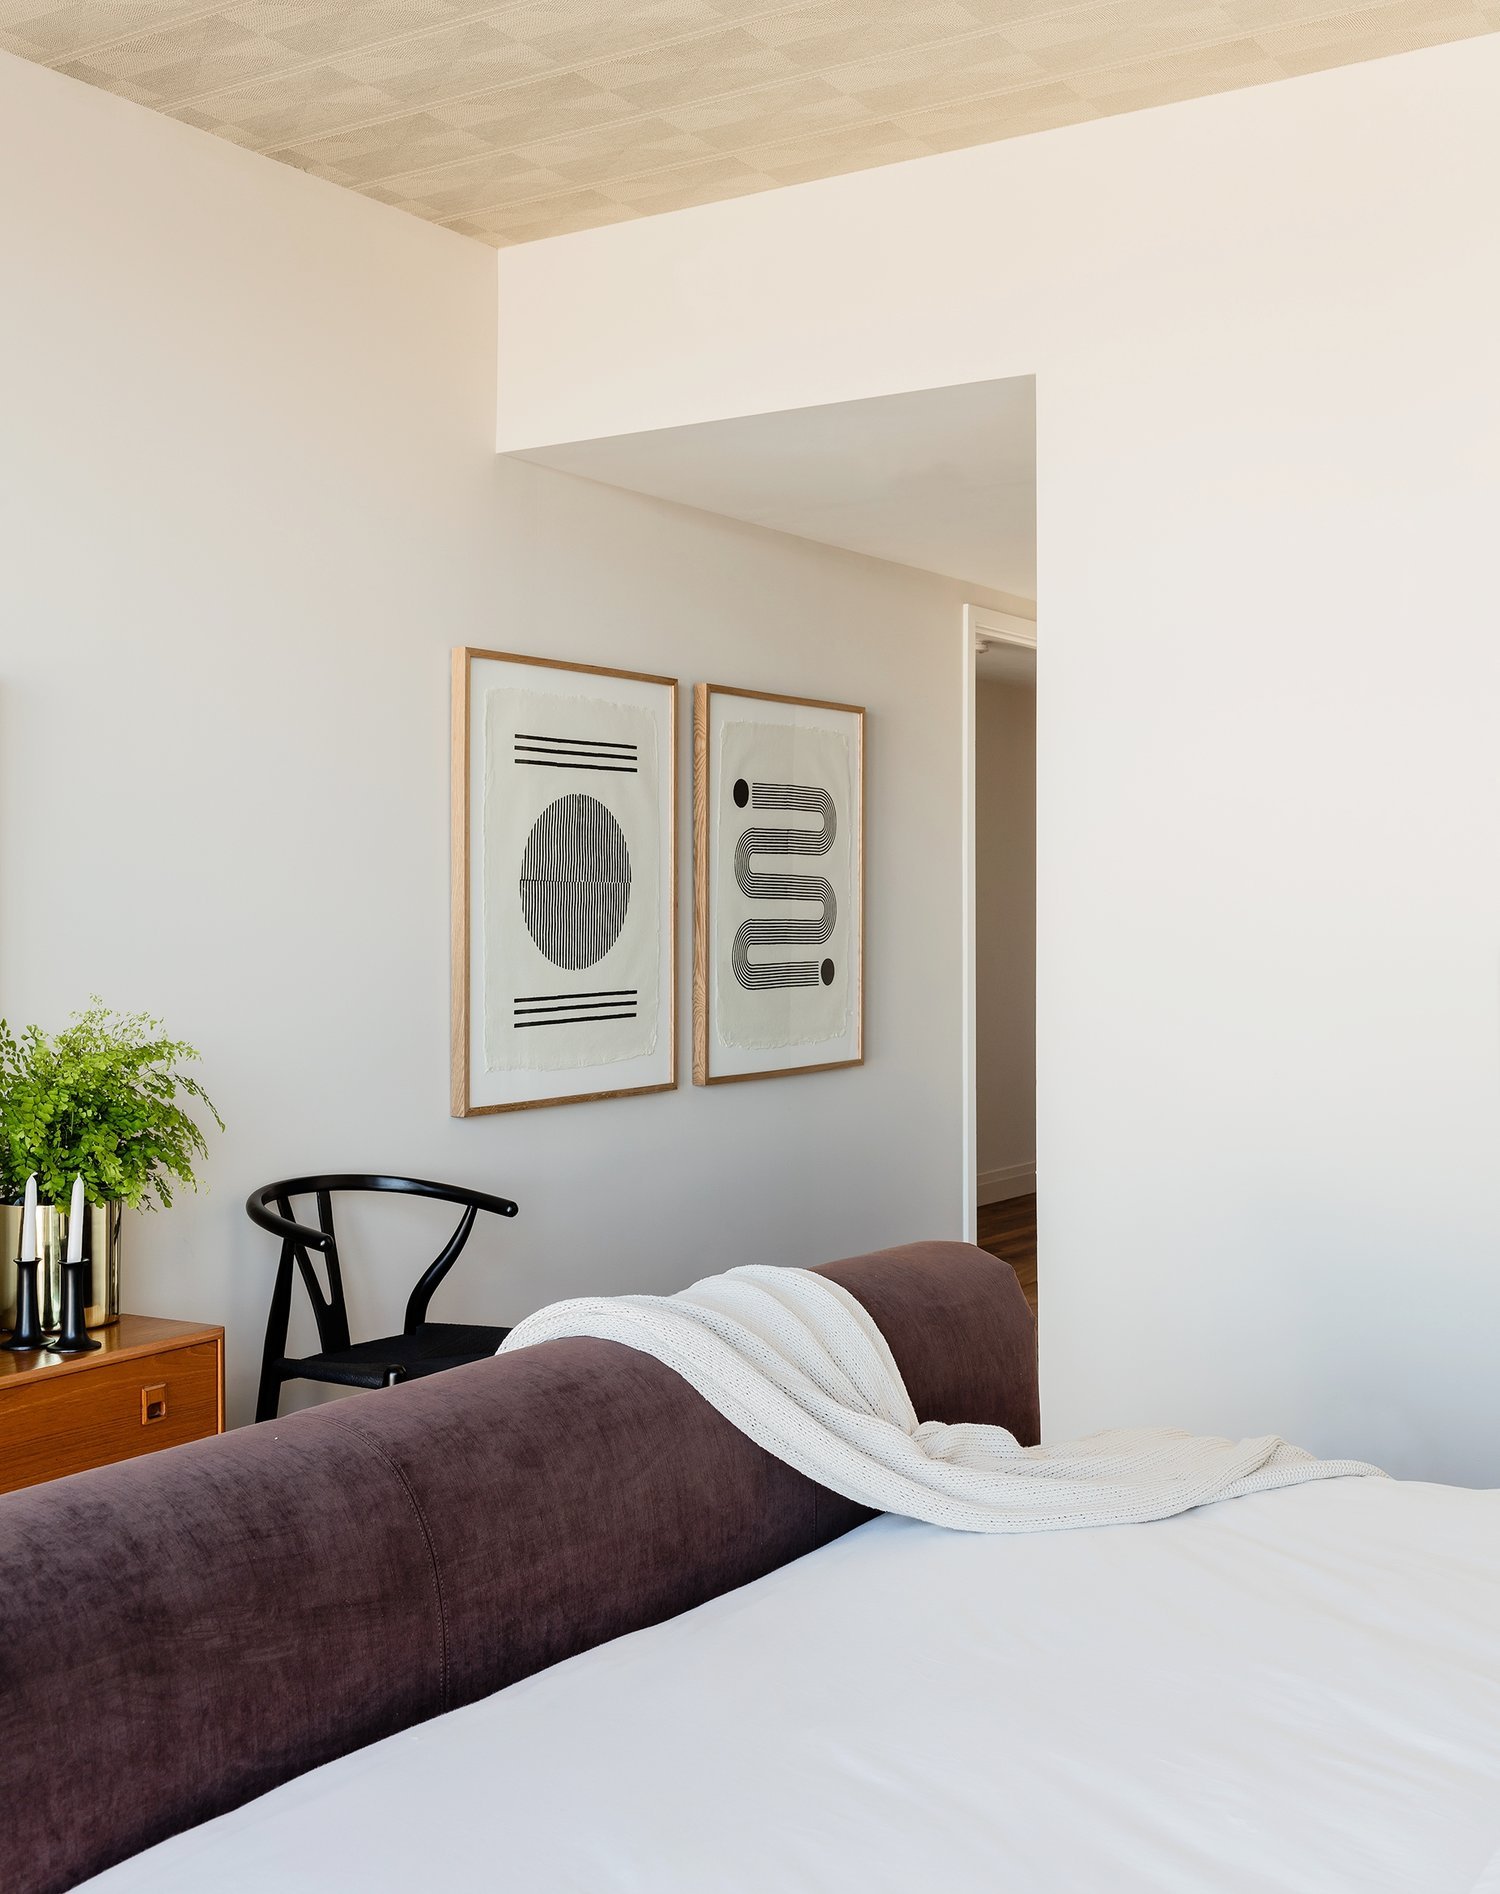 pier-4-model-master-bedroom-art-hudson-interior-designs.jpg